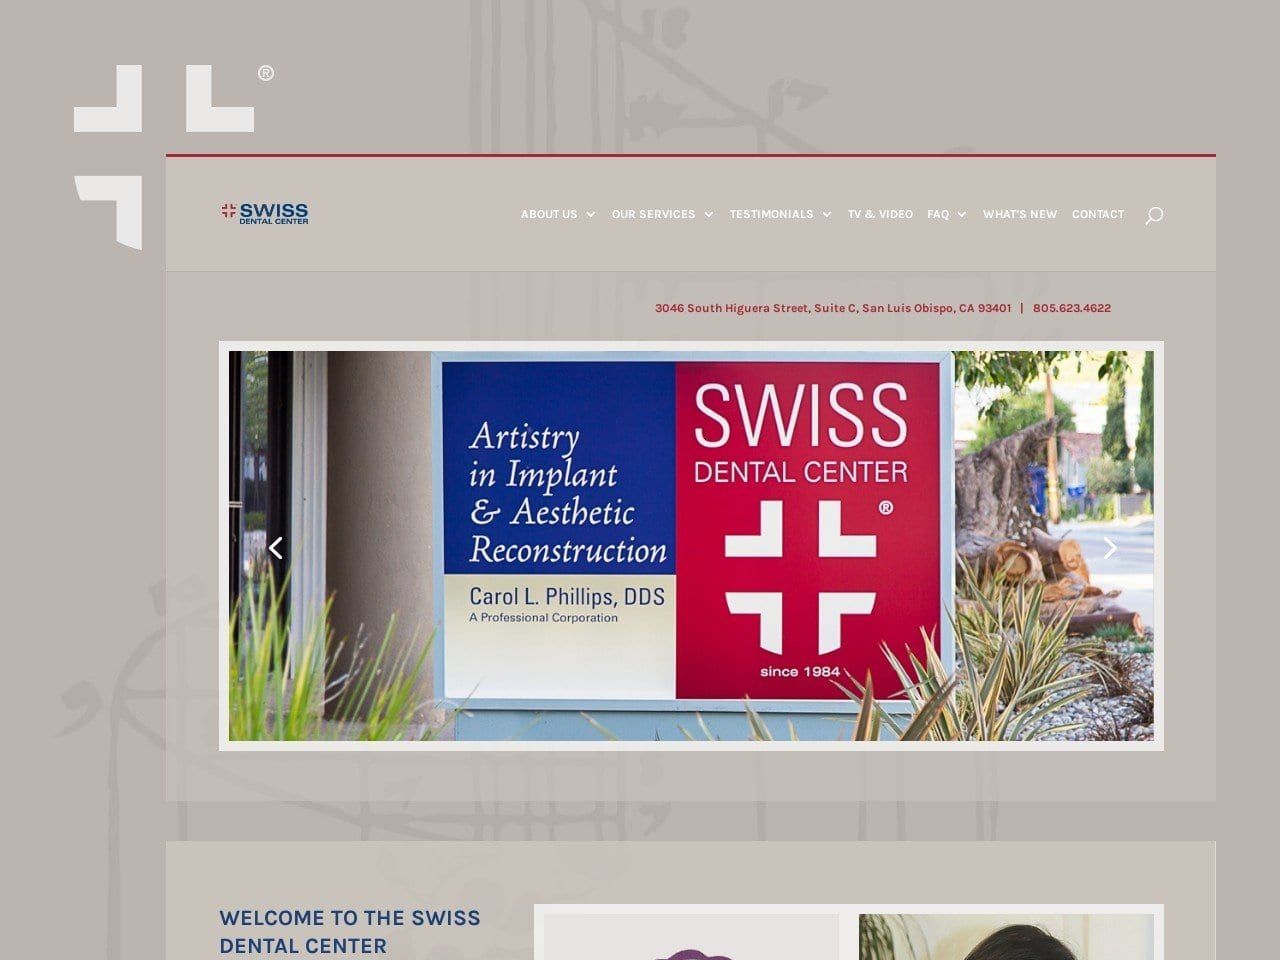 Swiss Dental Center Website Screenshot from swissdentalcenter.com